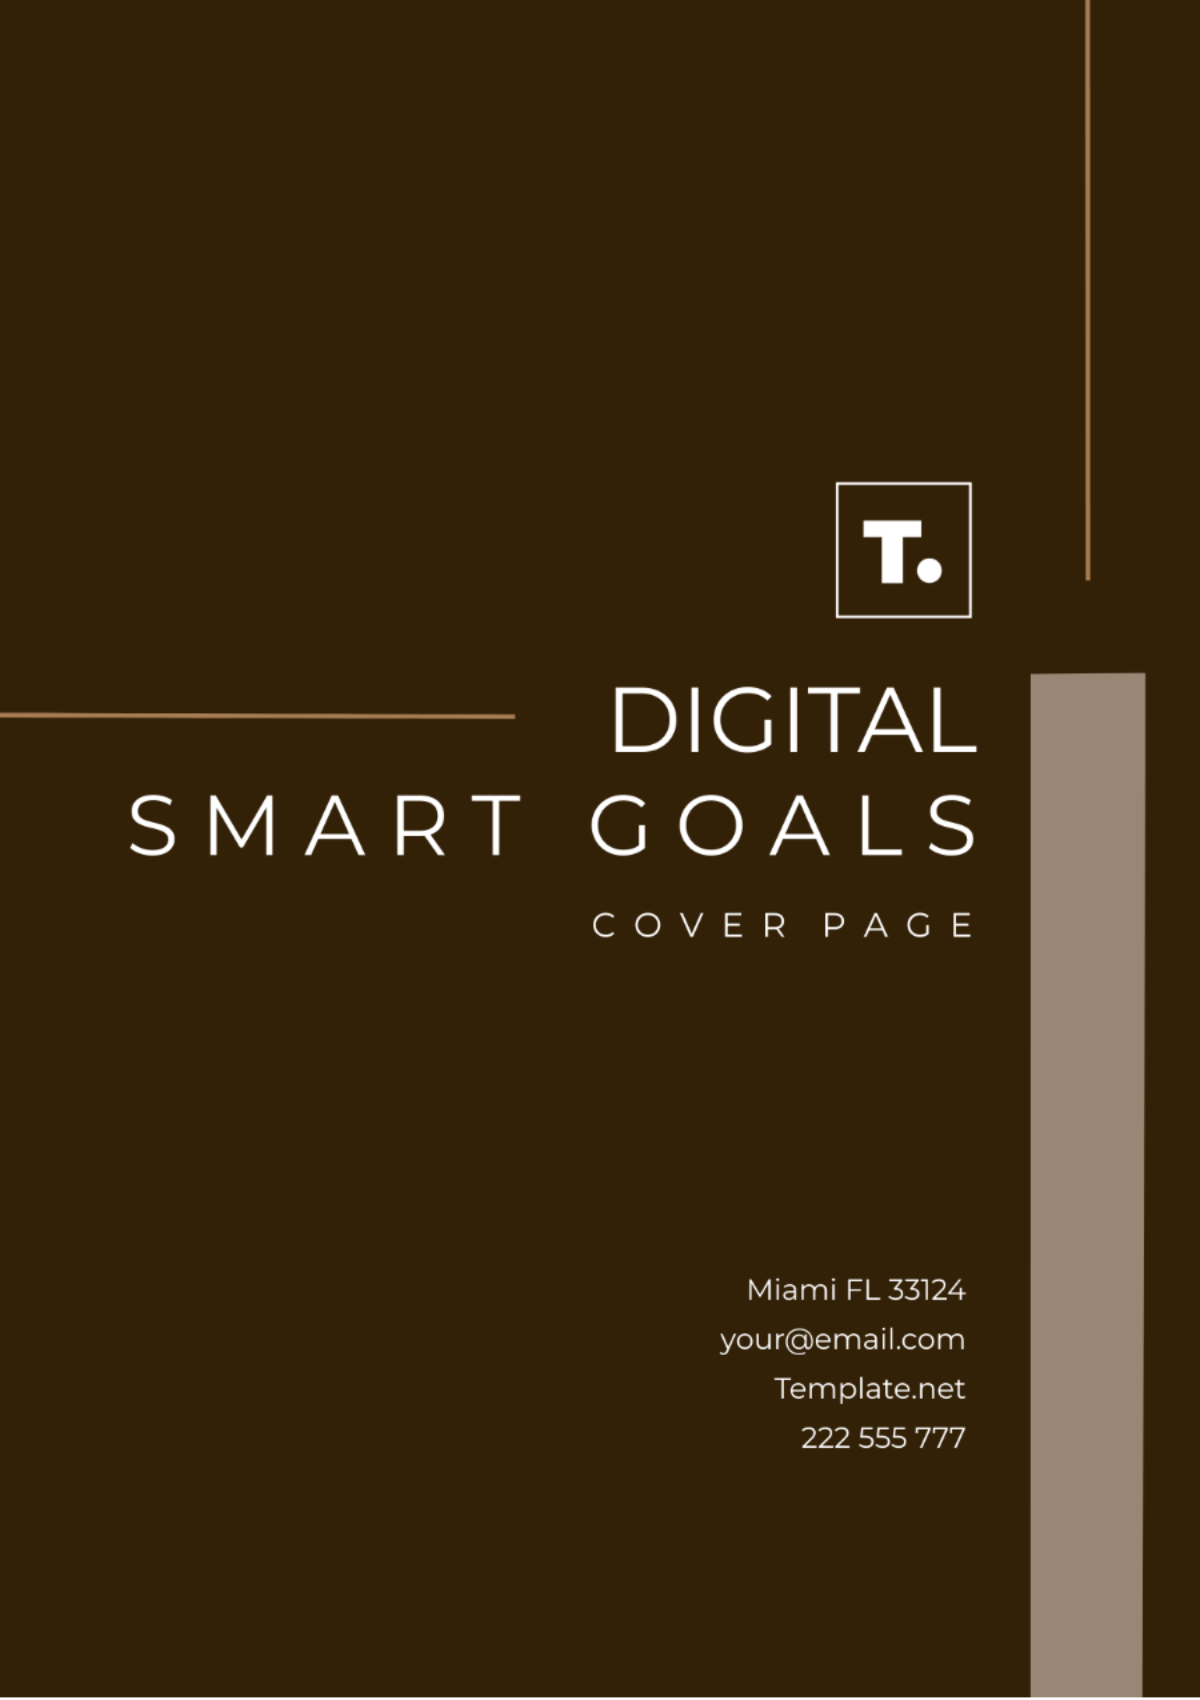 Digital SMART Goals Template